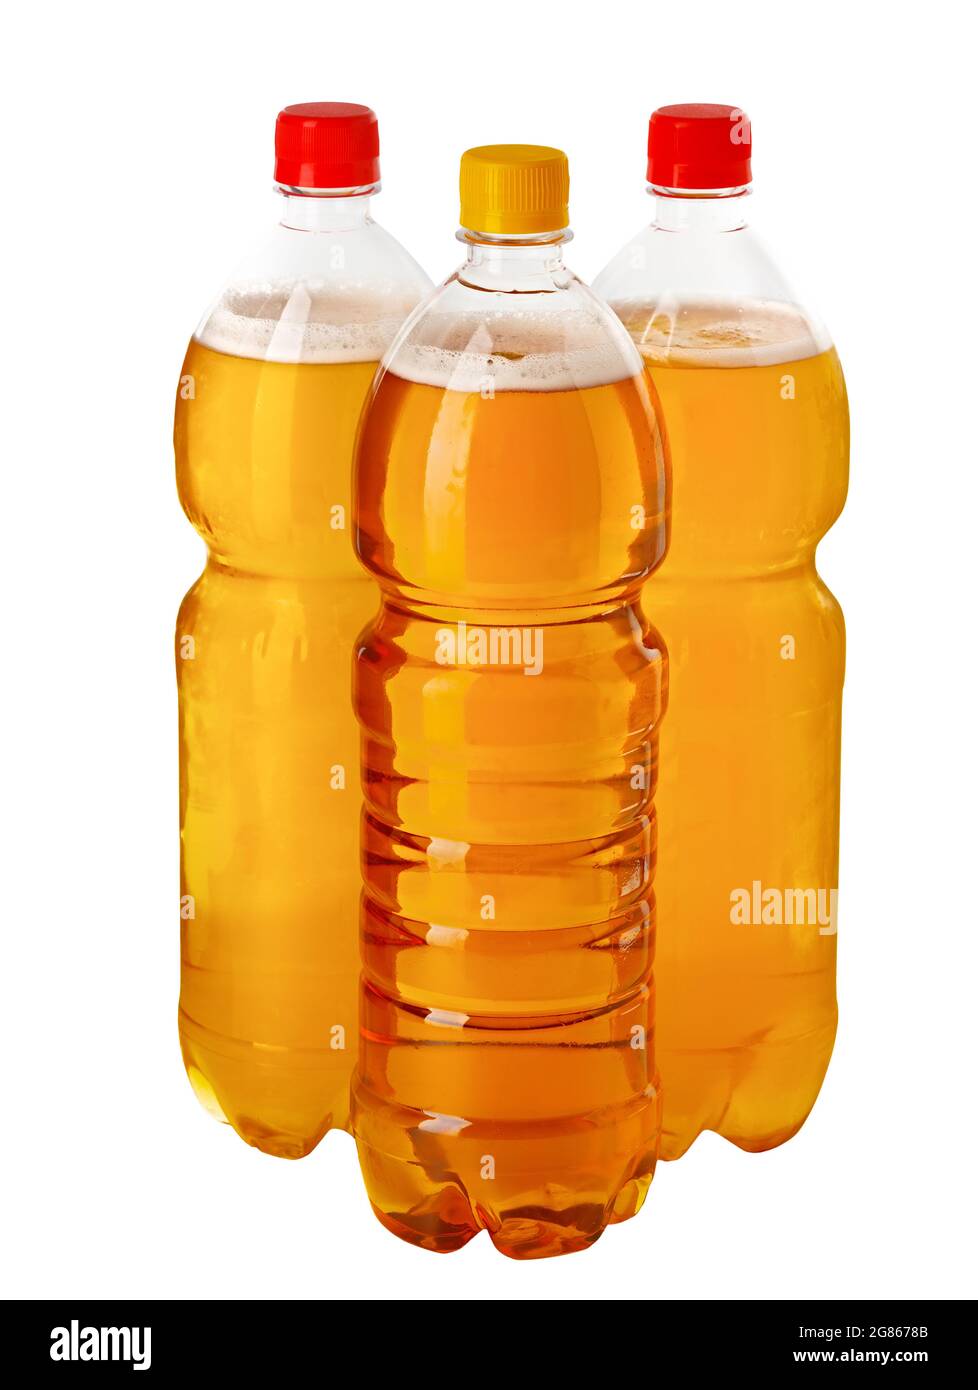 Cerveza de barril. Se trata de tres botellas de plástico de cerveza de barril natural aisladas sobre un fondo blanco. Surtido de bebidas alcohólicas. Diseño para una tienda de cerveza. Foto de stock